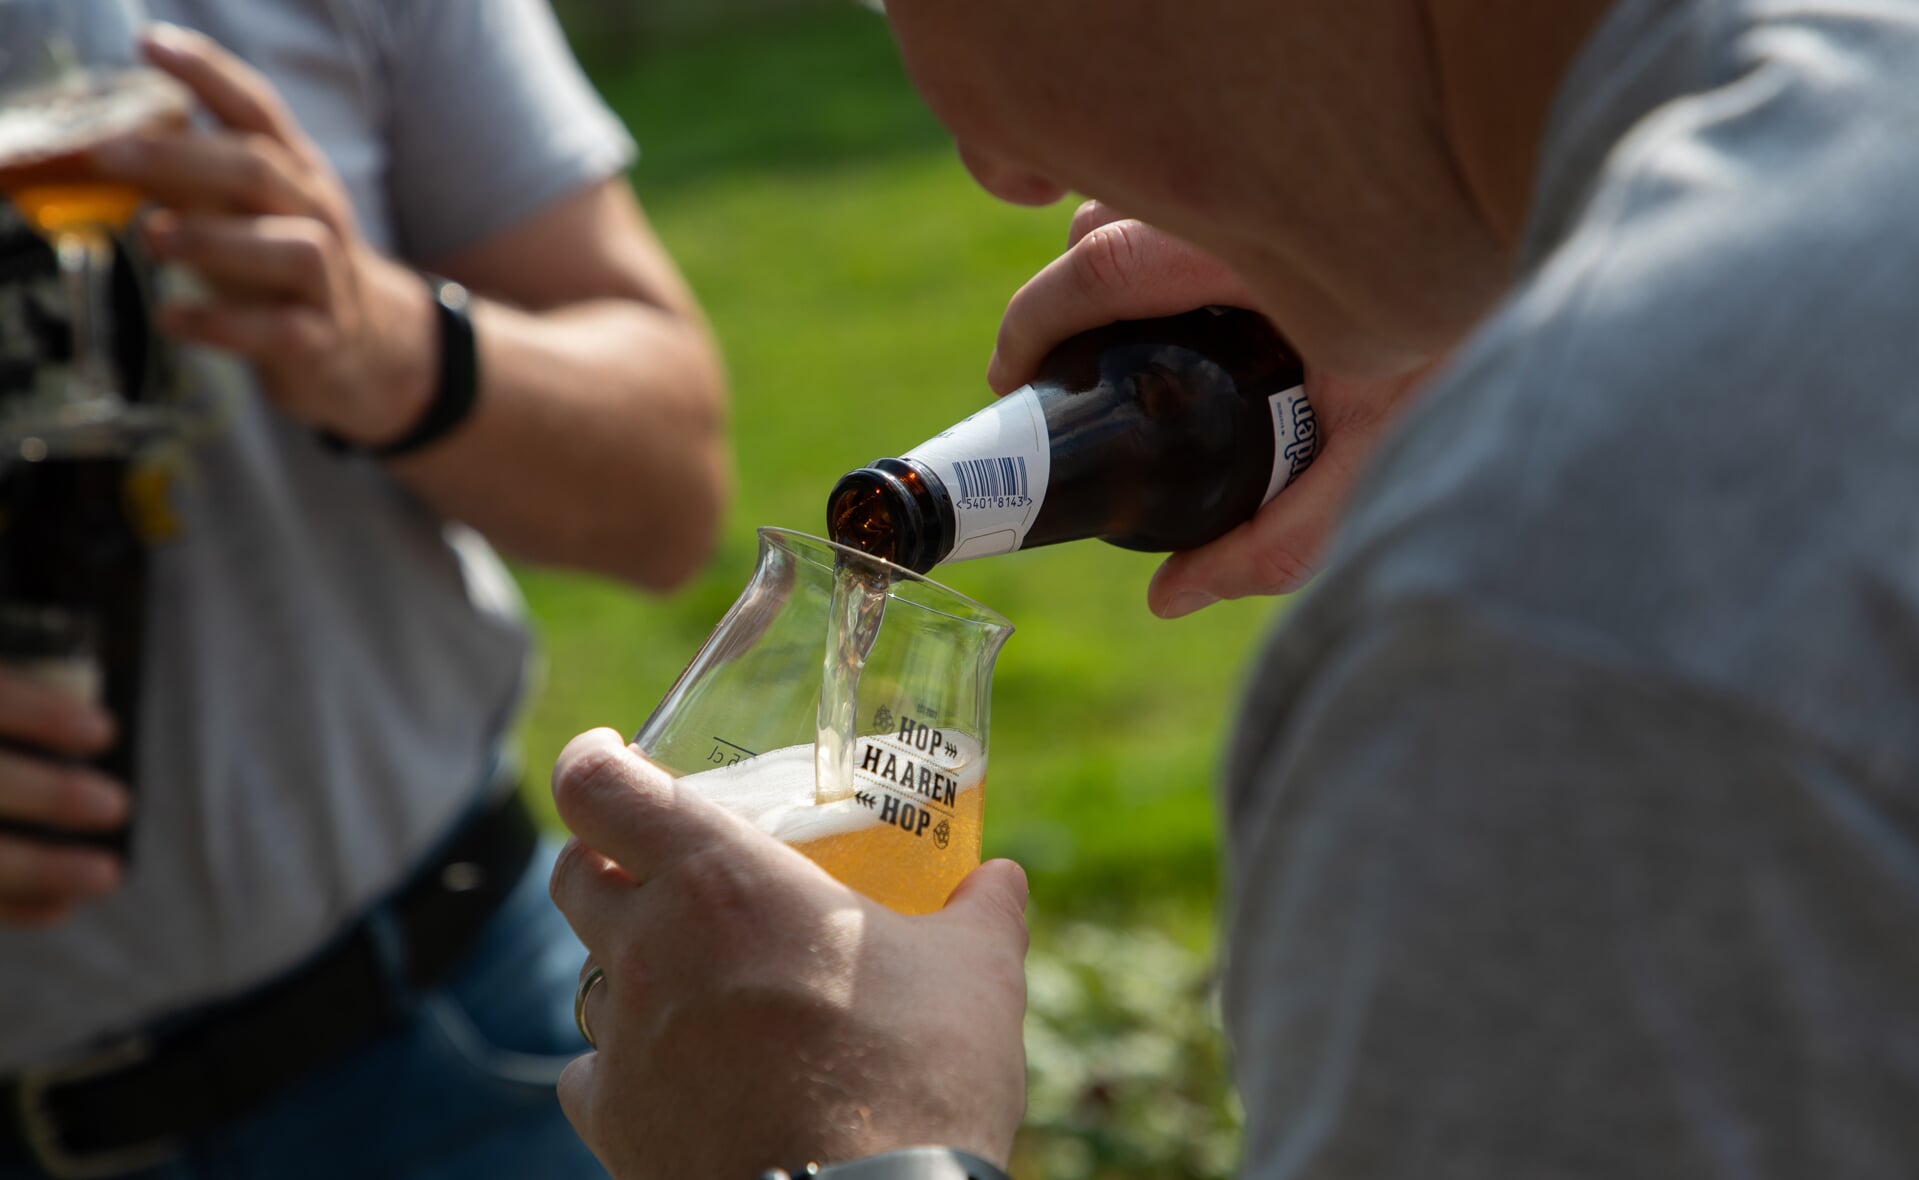 De organisatie probeerde de nieuwe glazen voor het bierfestival Hop Haaren Hop alvast uit. Ze zijn goedgekeurd!